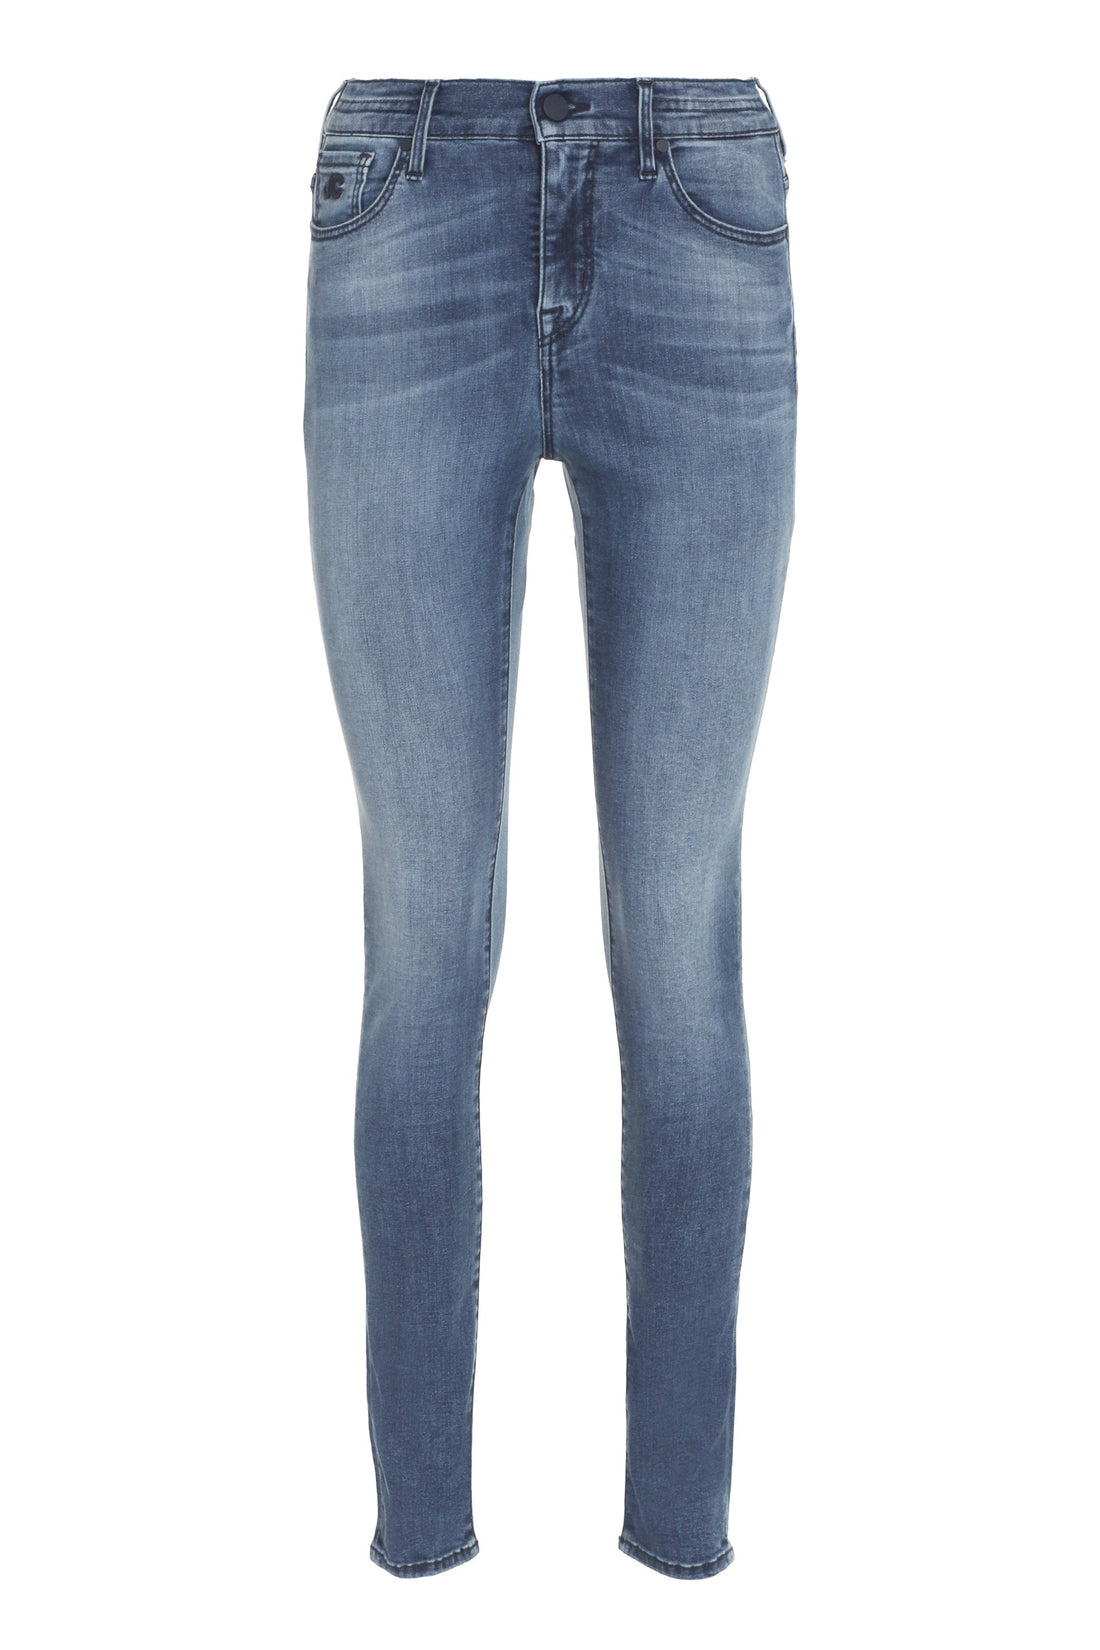 Jacob Cohen-OUTLET-SALE-5-pocket jeans-ARCHIVIST